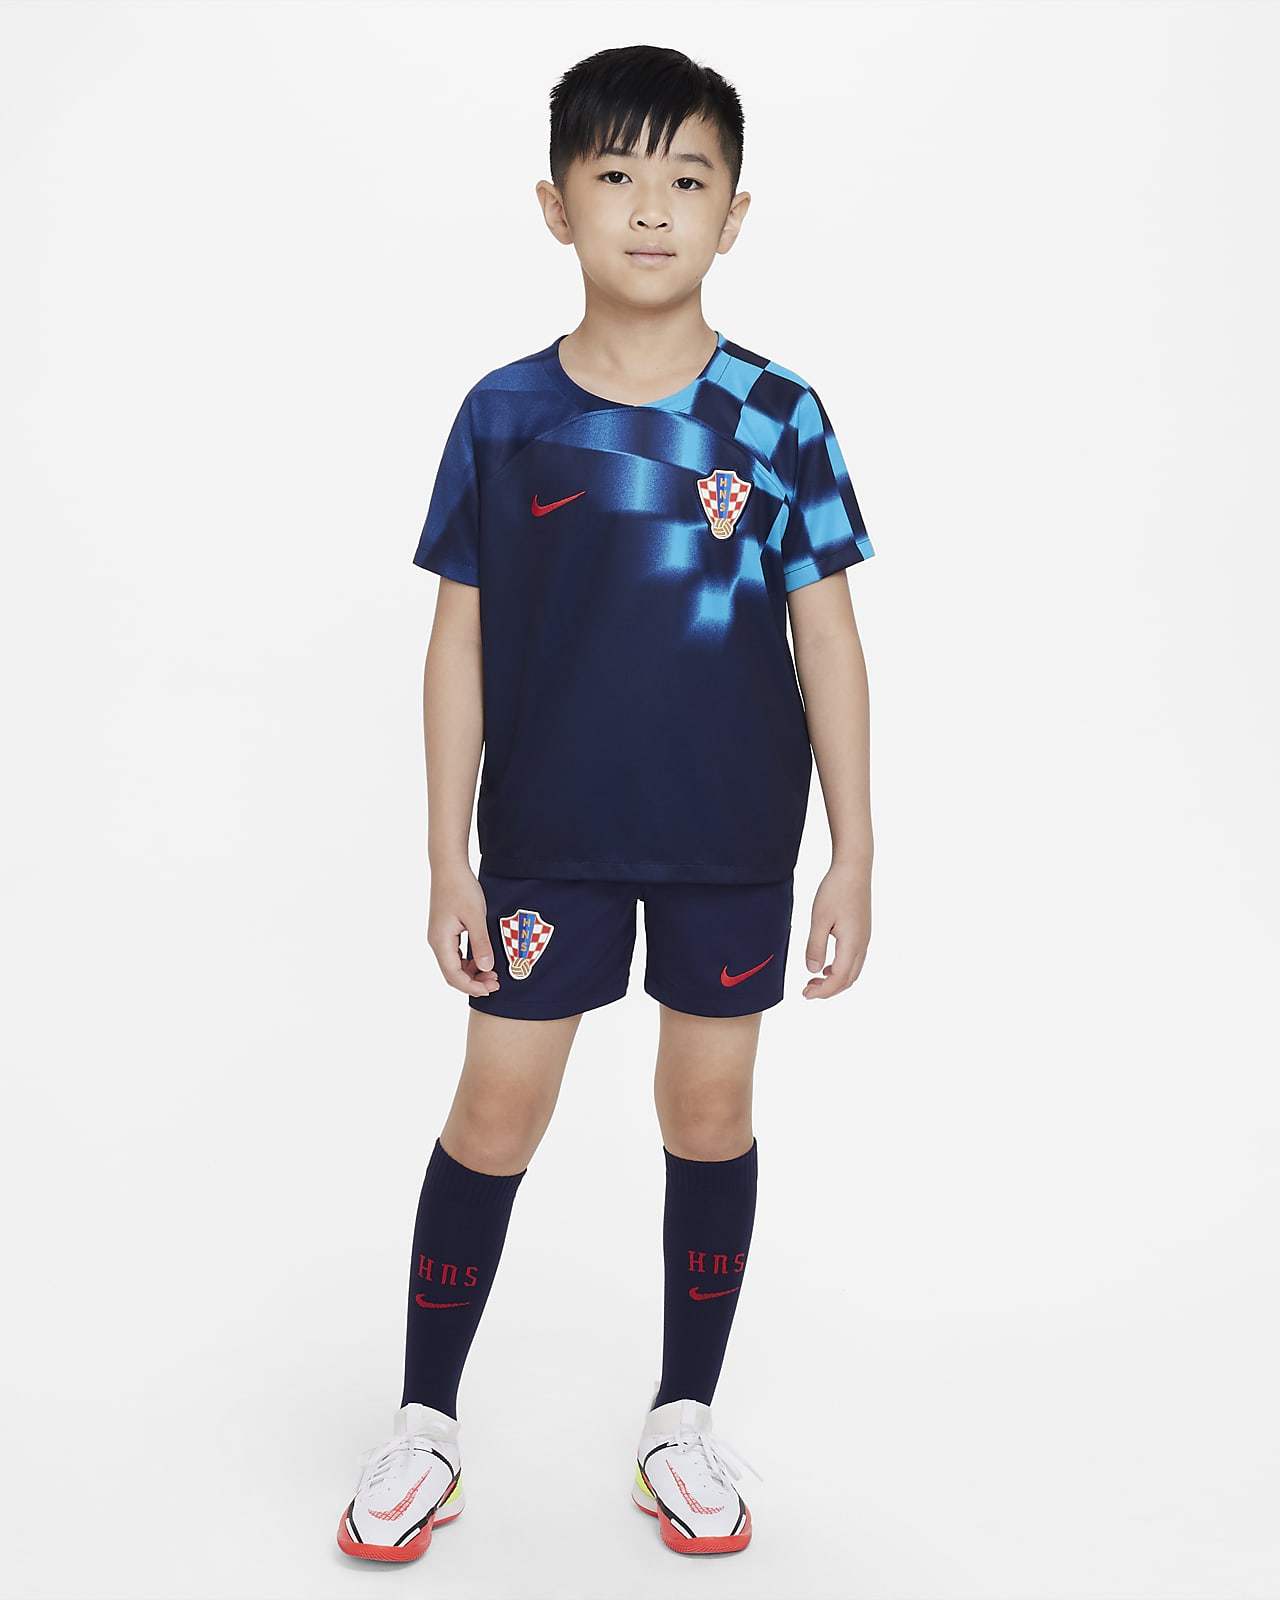 equipación Equipación de fútbol - Niño/a pequeño/a. Nike ES